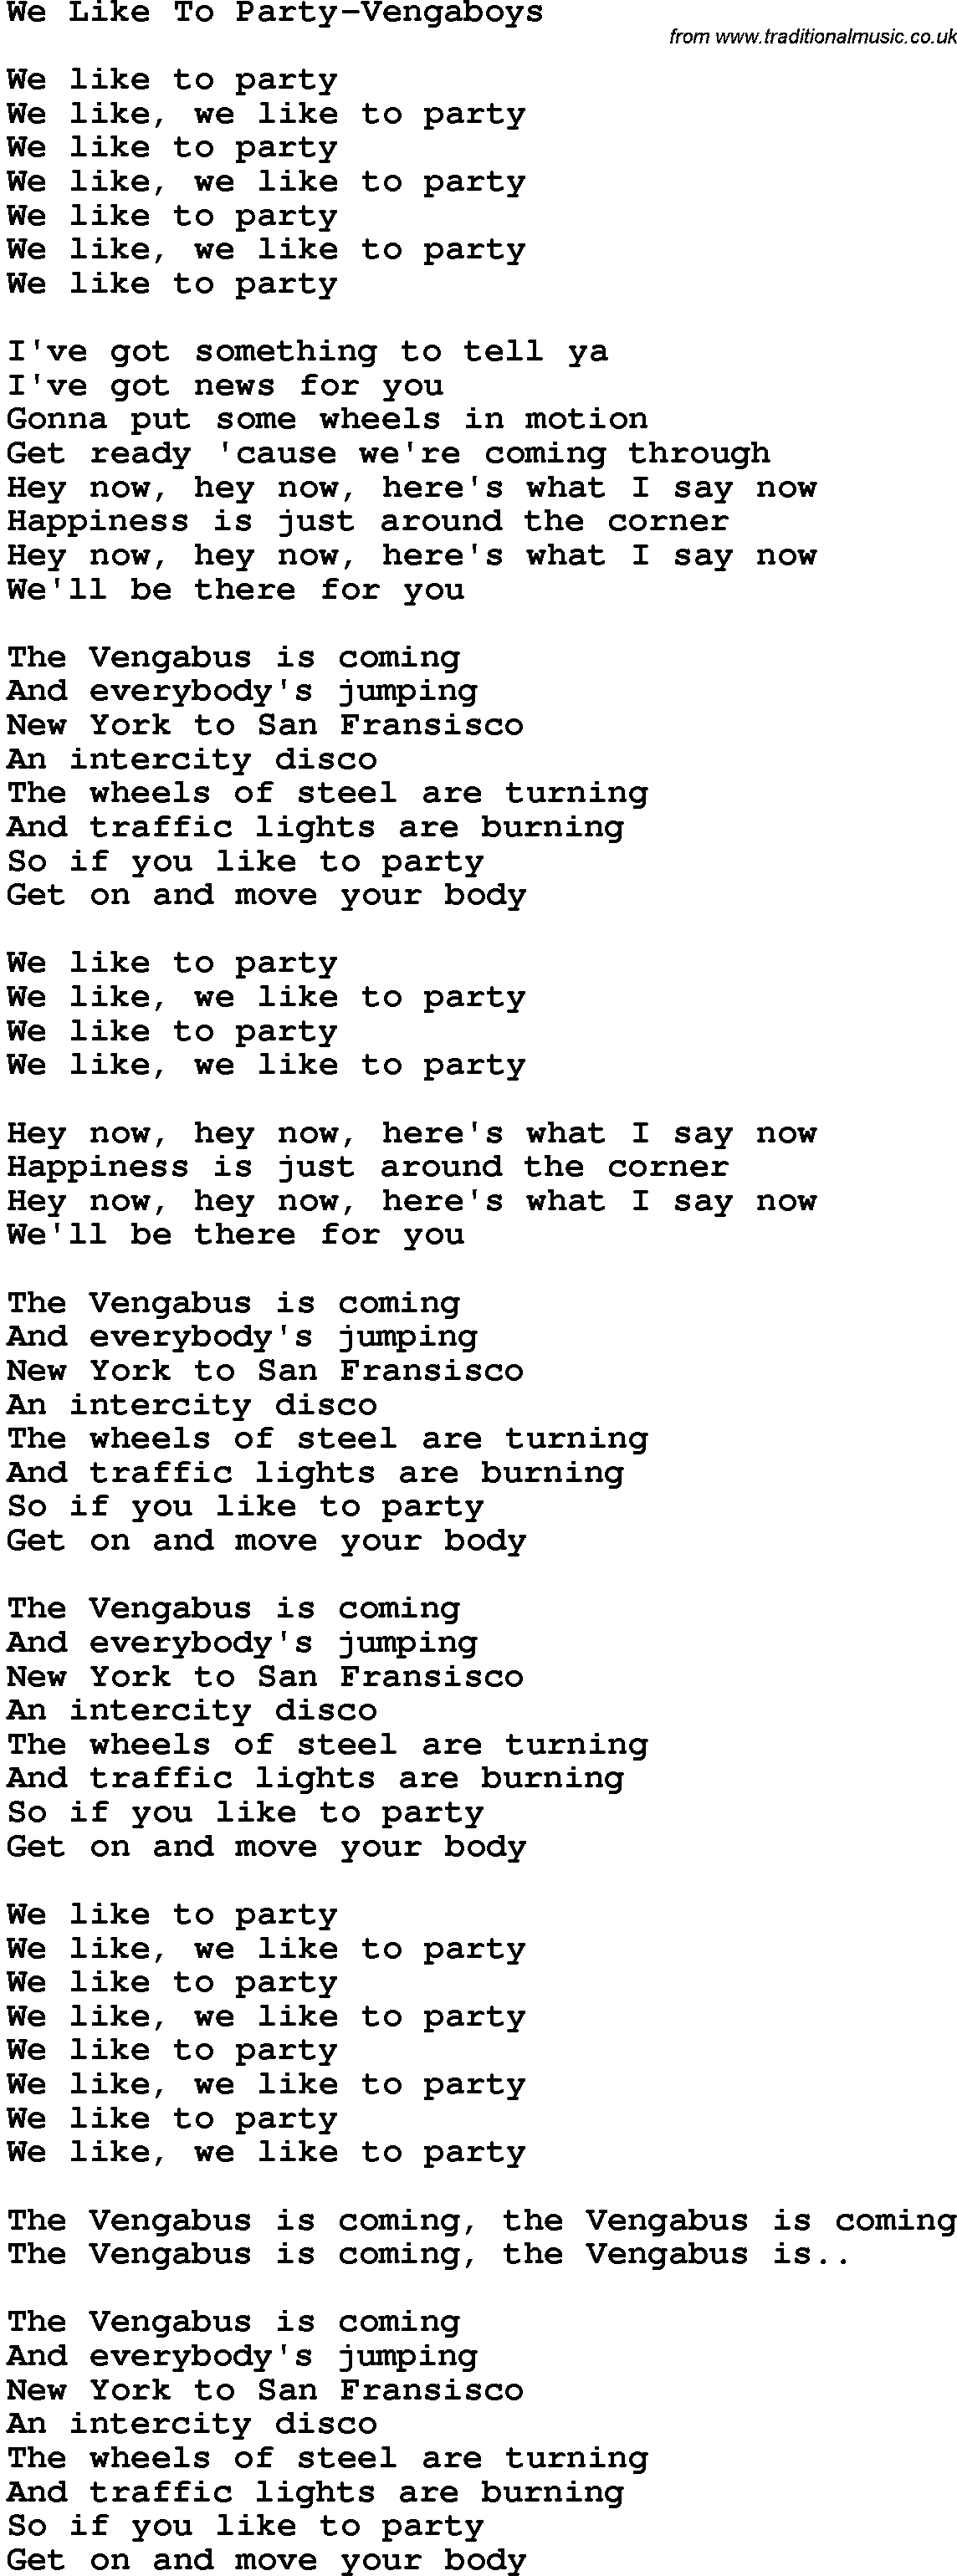 Novelty song: We Like To Party-Vengaboys lyrics